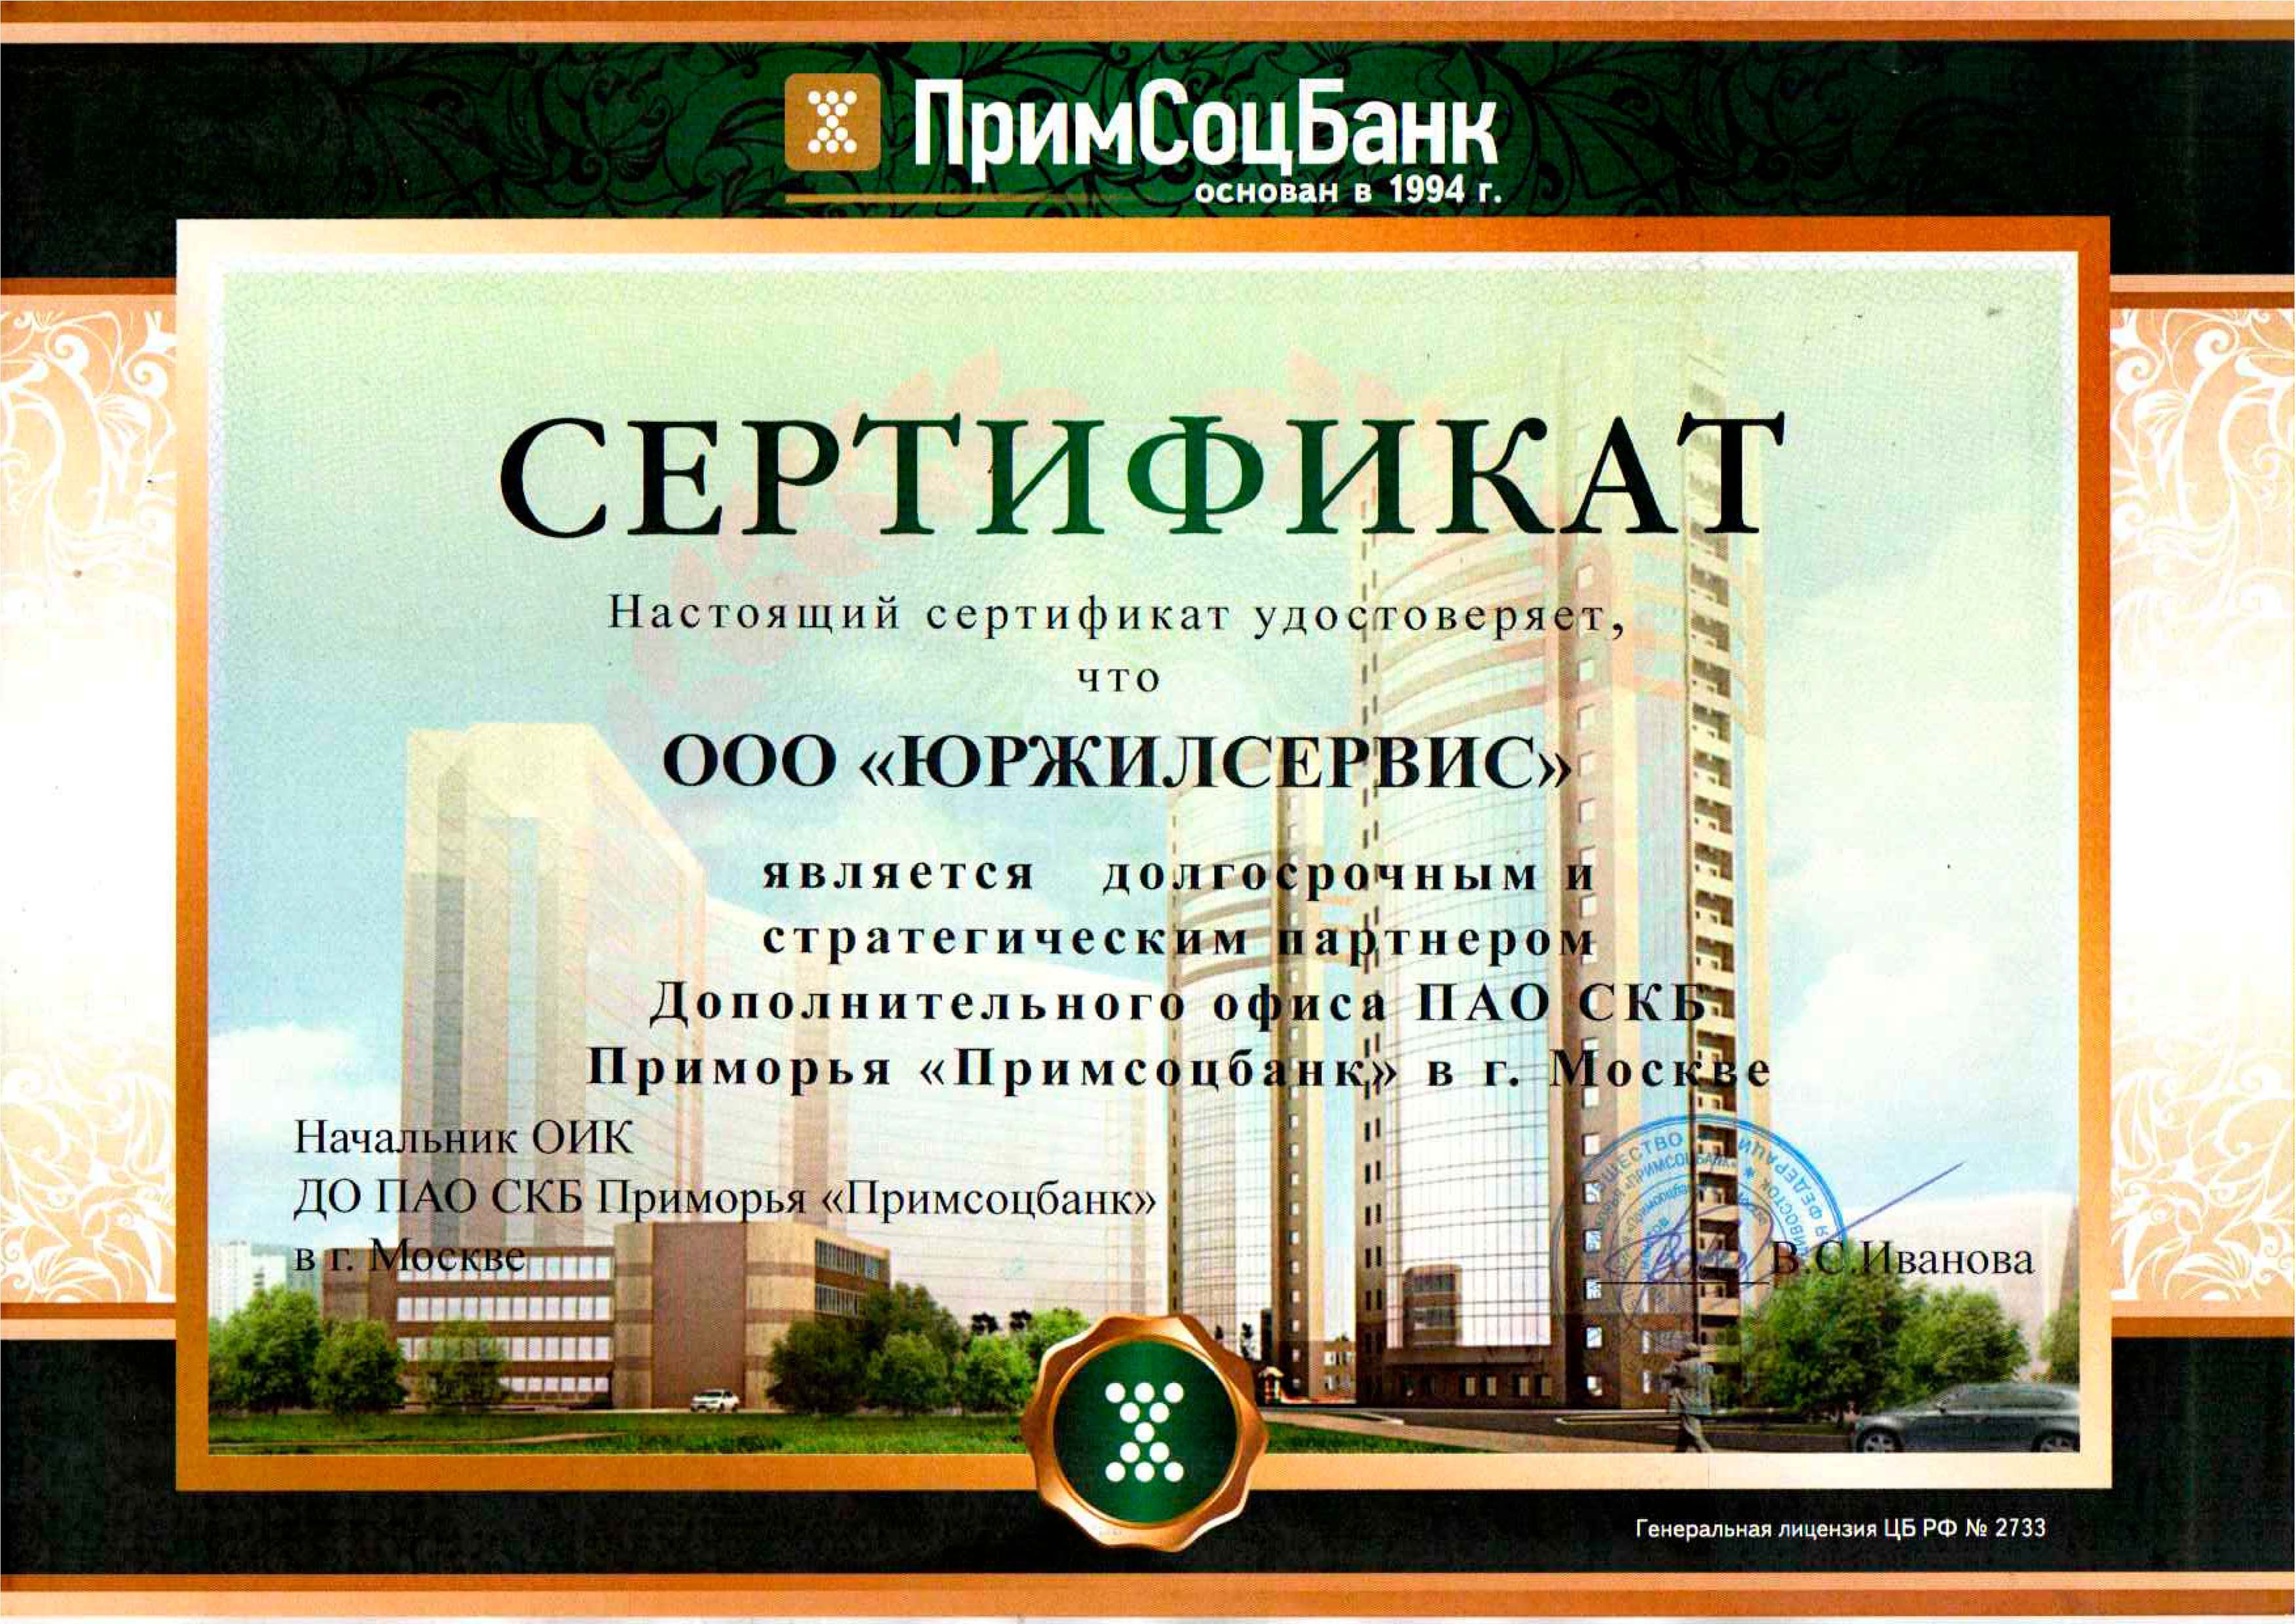 Юржилсервис является долгосрочным партнером Дополнительного офиса ПАО СКБ Приморья Примсоцбанк в г. Москве